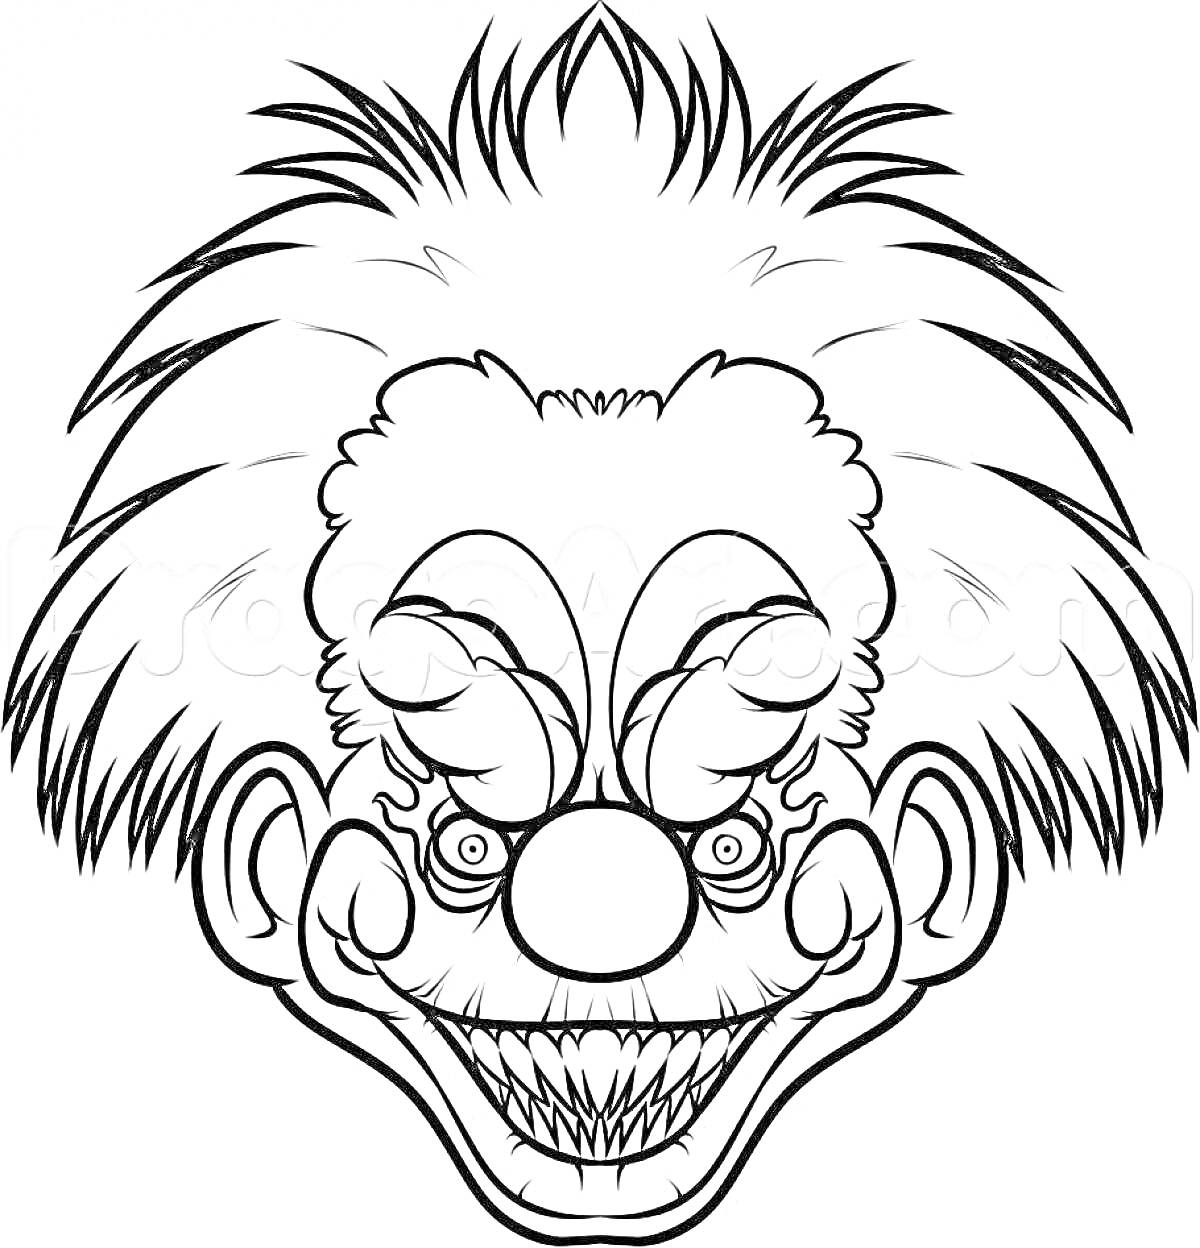 Раскраска Устрашающий клоун с остроконечными зубами и растрёпанными волосами